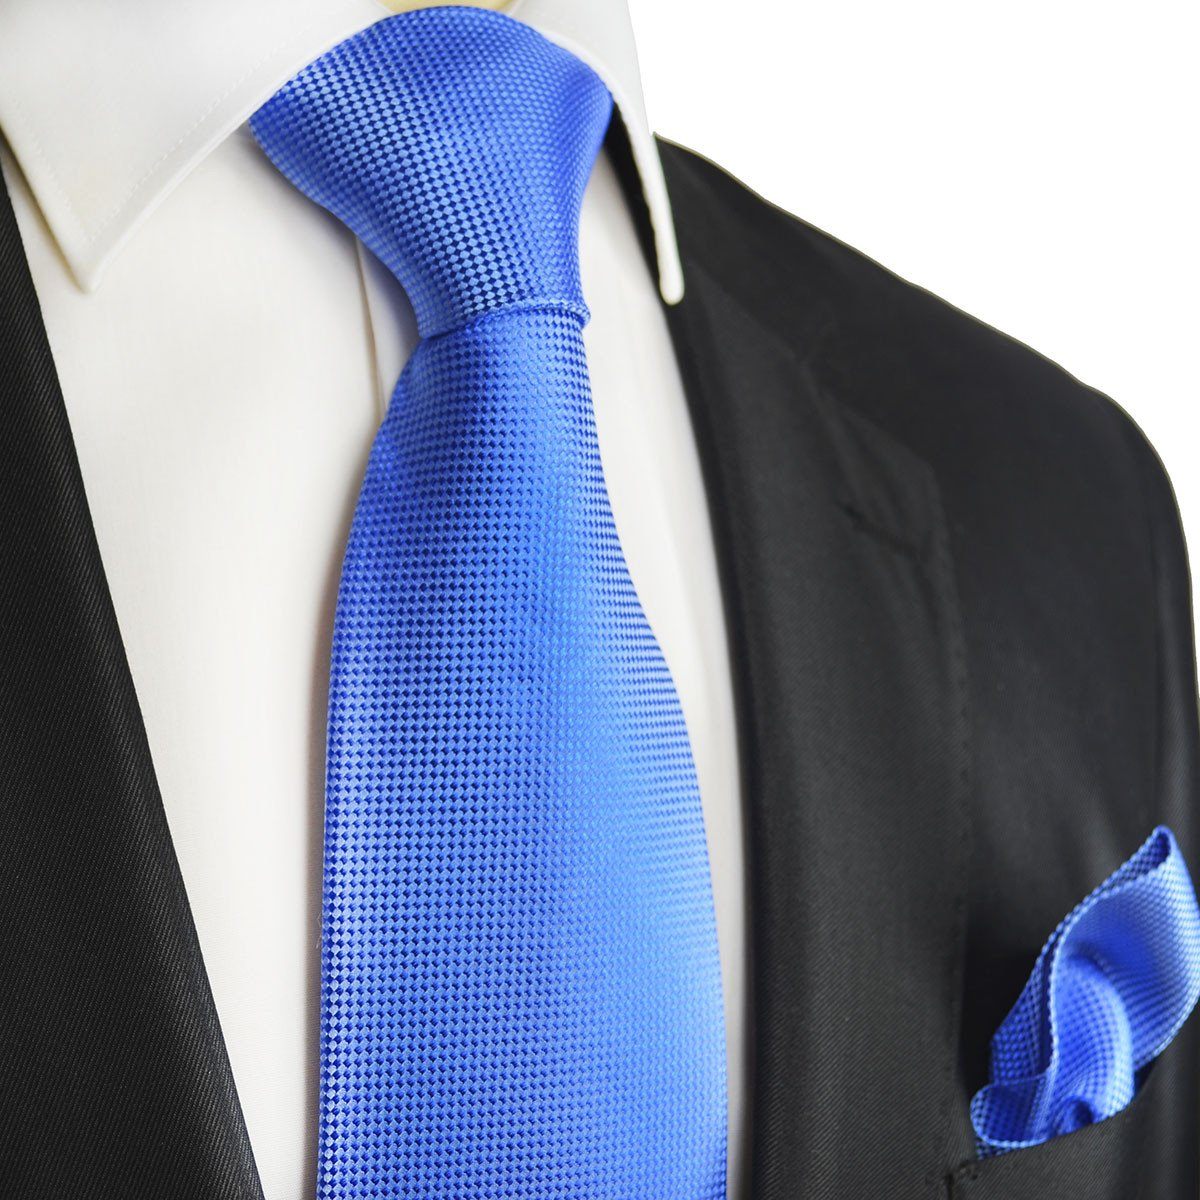 Голубой галстук к голубой рубашке фото